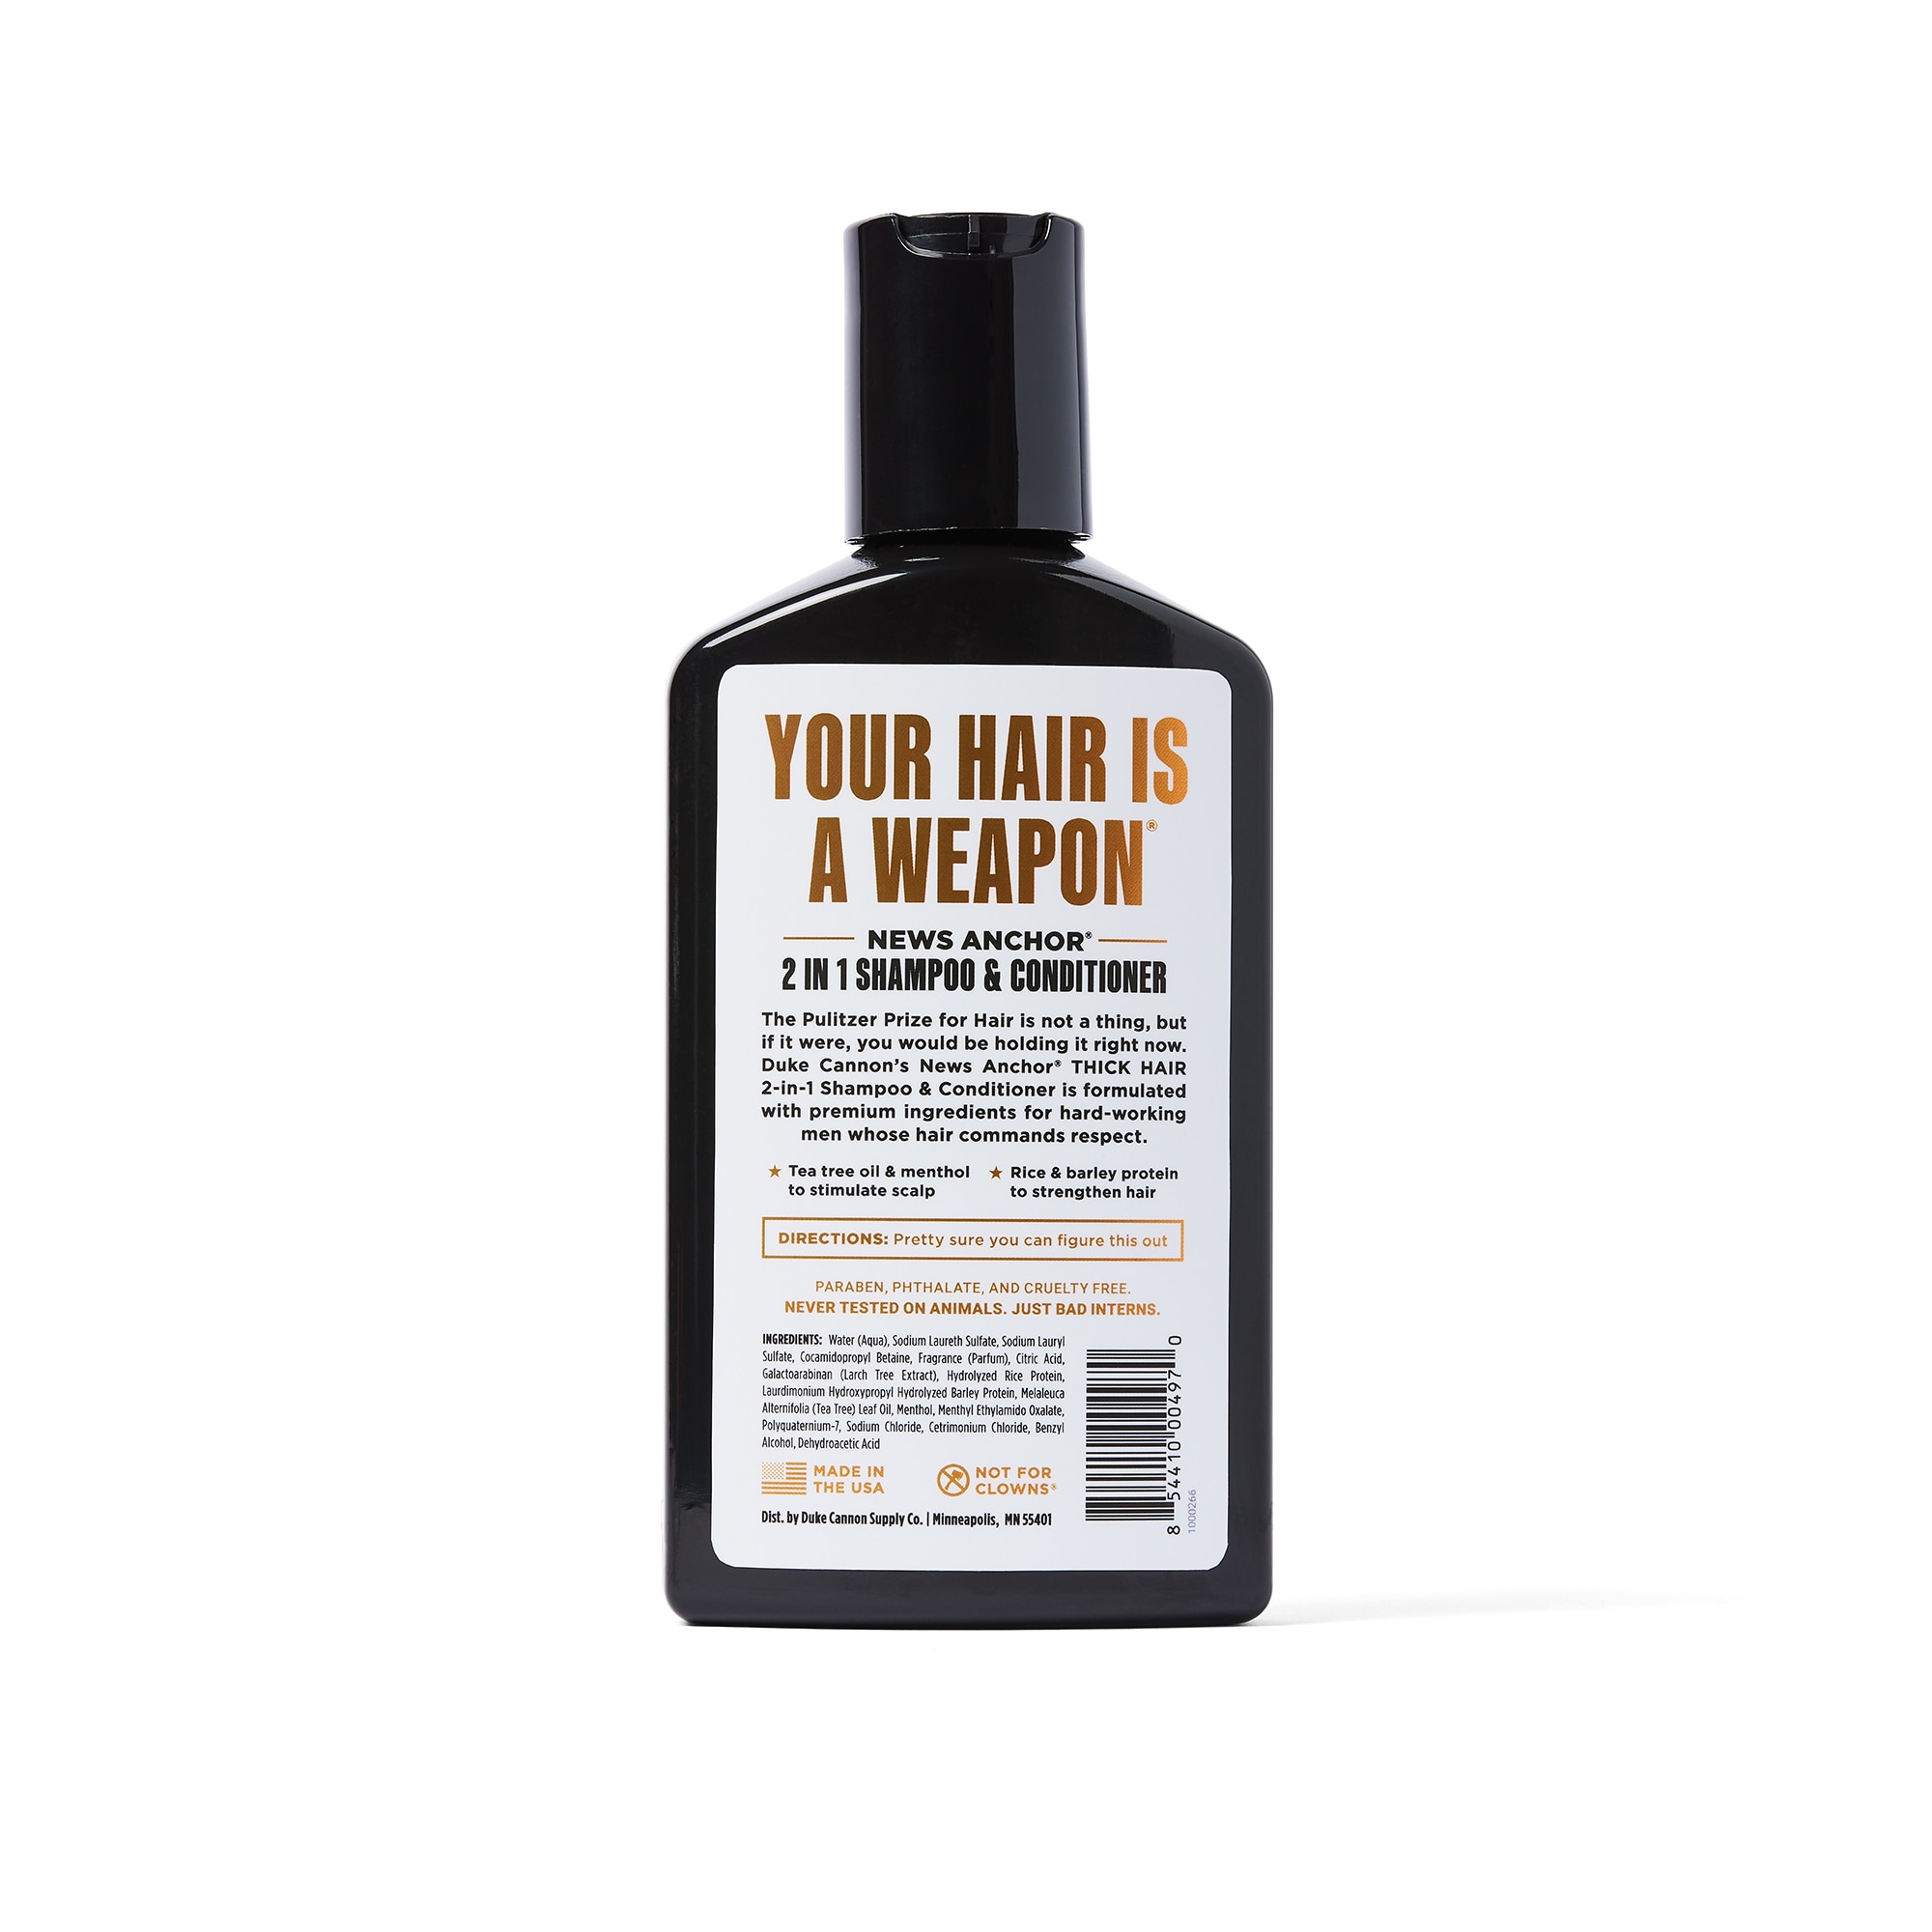 Liquid Pine Tar Shampoo - 16 Fluid Ounces, Size: 5 Bottles